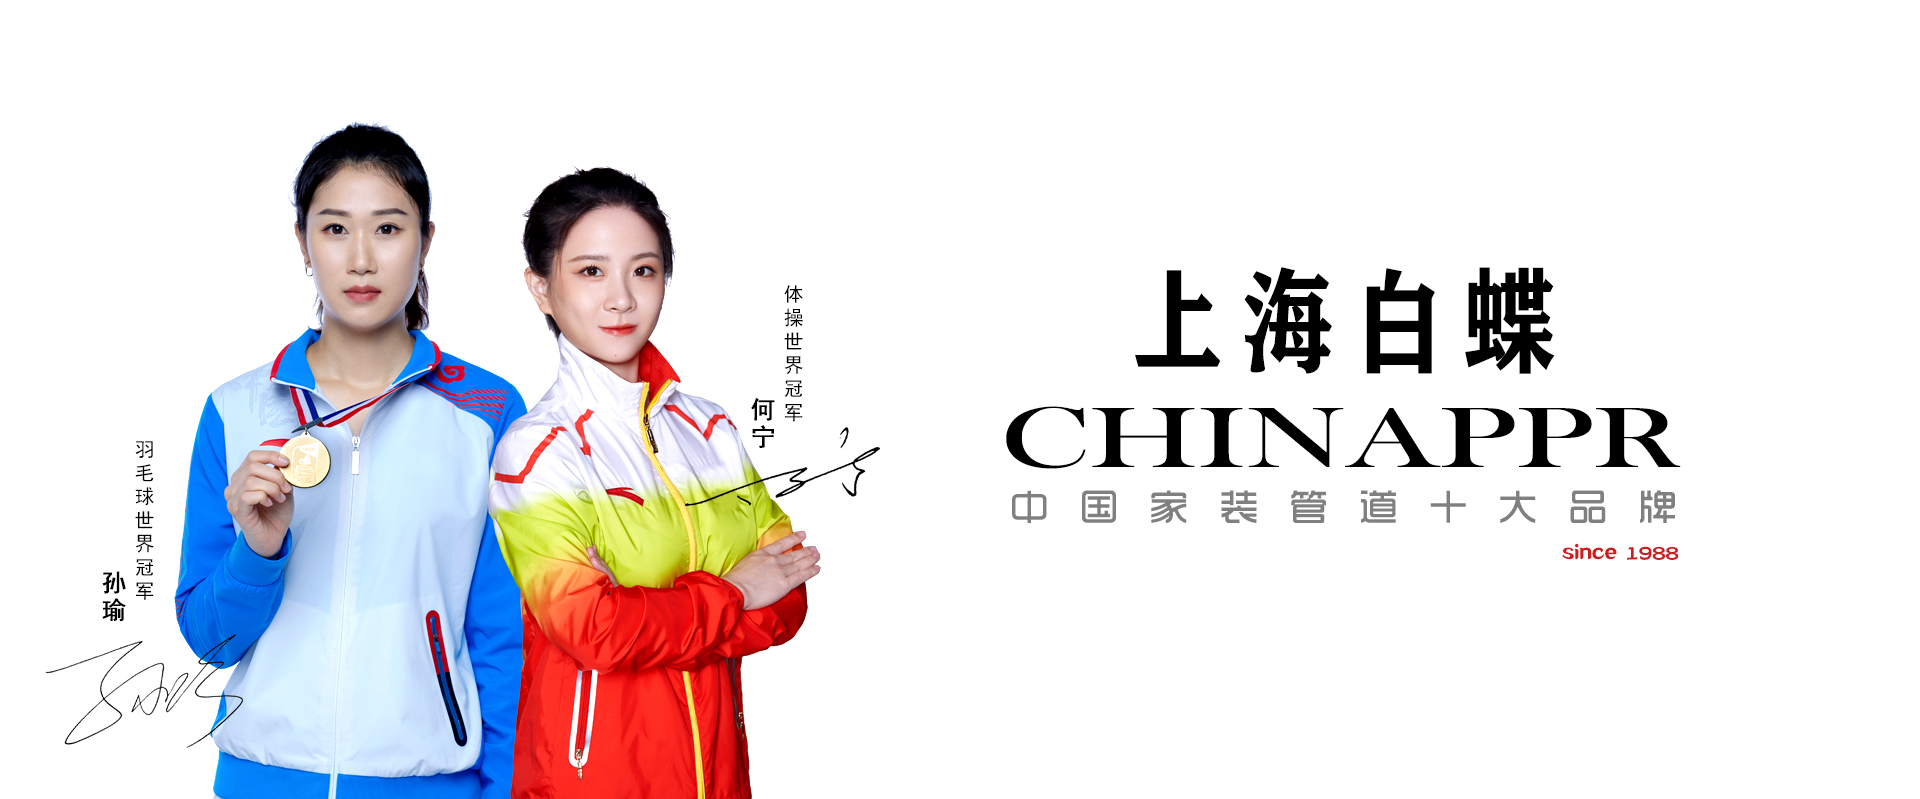 上海白蝶管业世界冠军品牌形象代言人